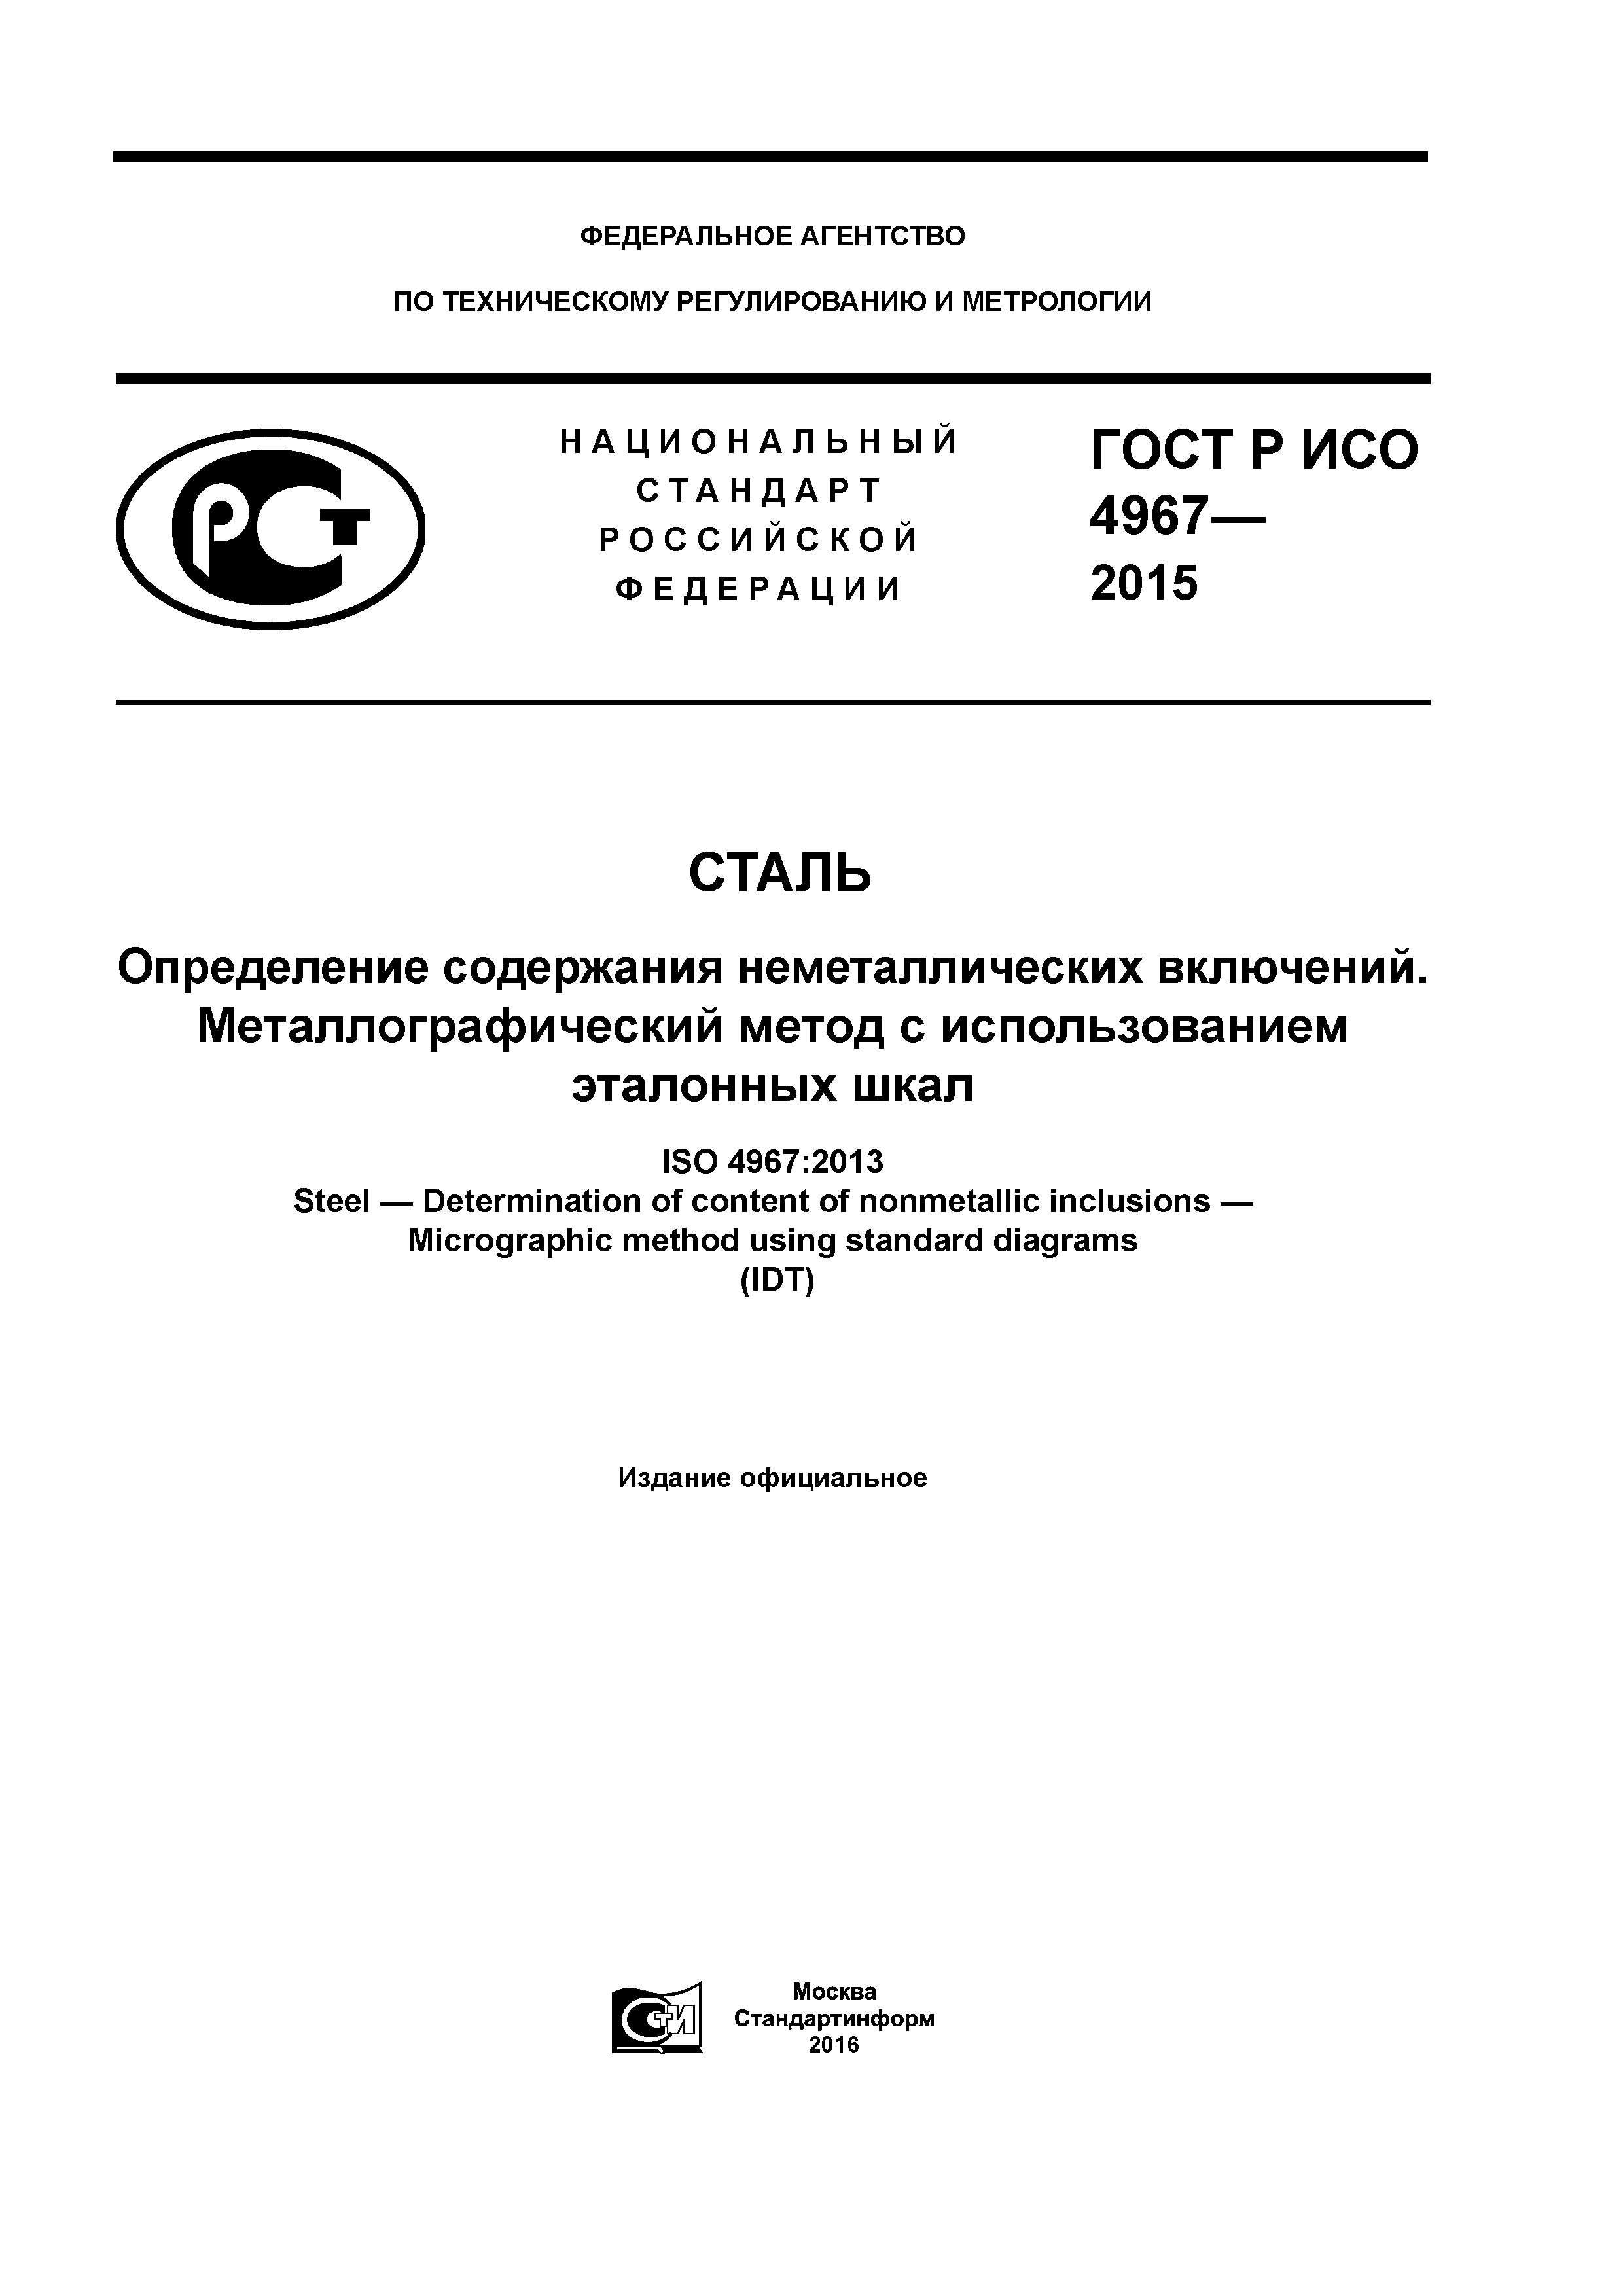 ГОСТ Р ИСО 4967-2015